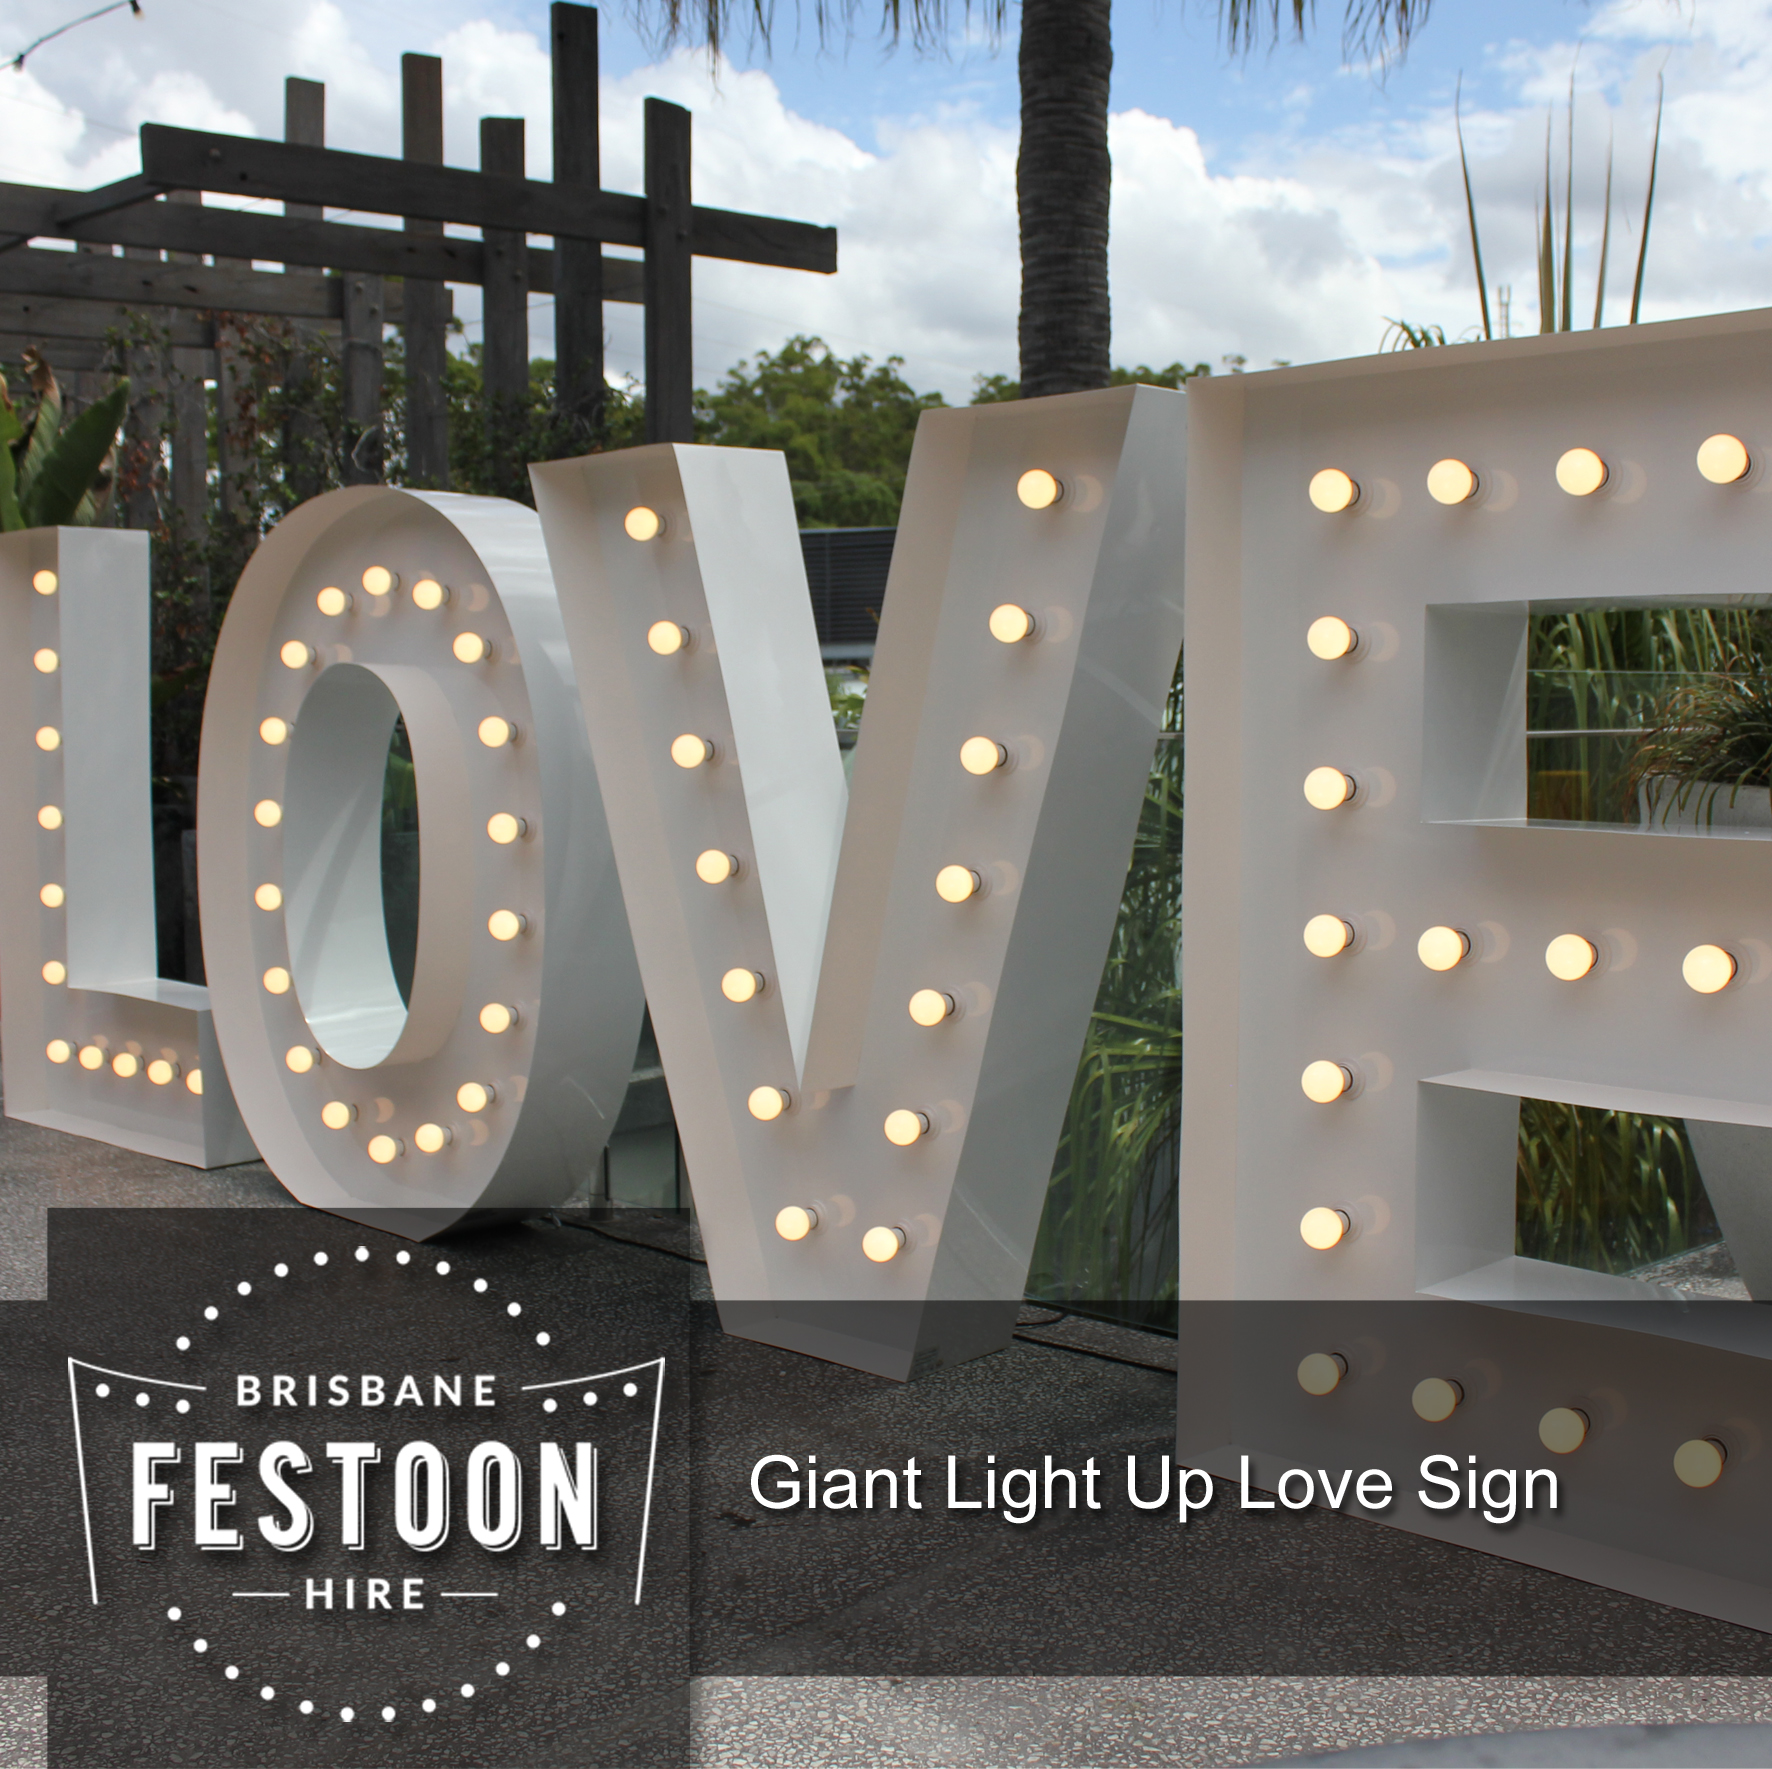 Brisbane Festoon Hire - Giant Light Up Love Sign 1.jpg